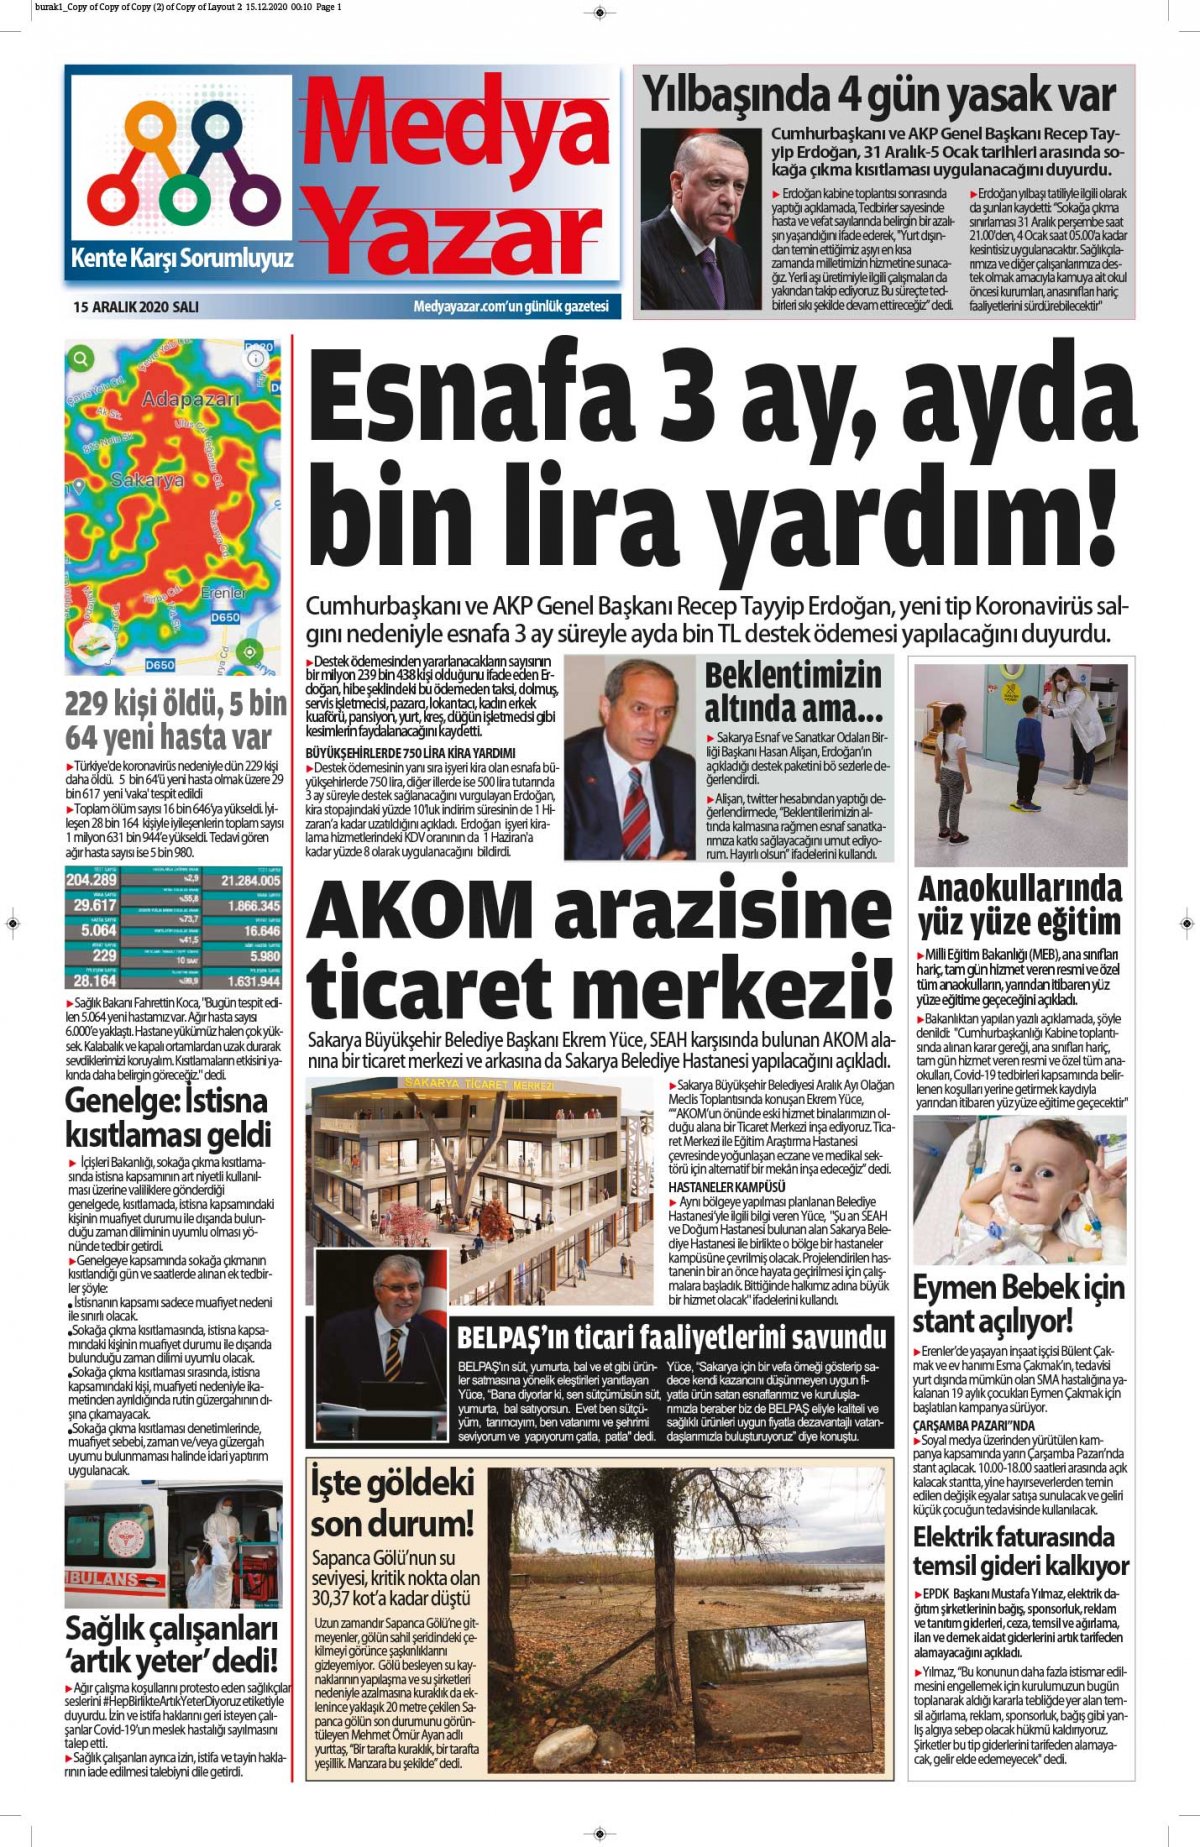 MedyaYazar - 15.12.2020 Manşeti